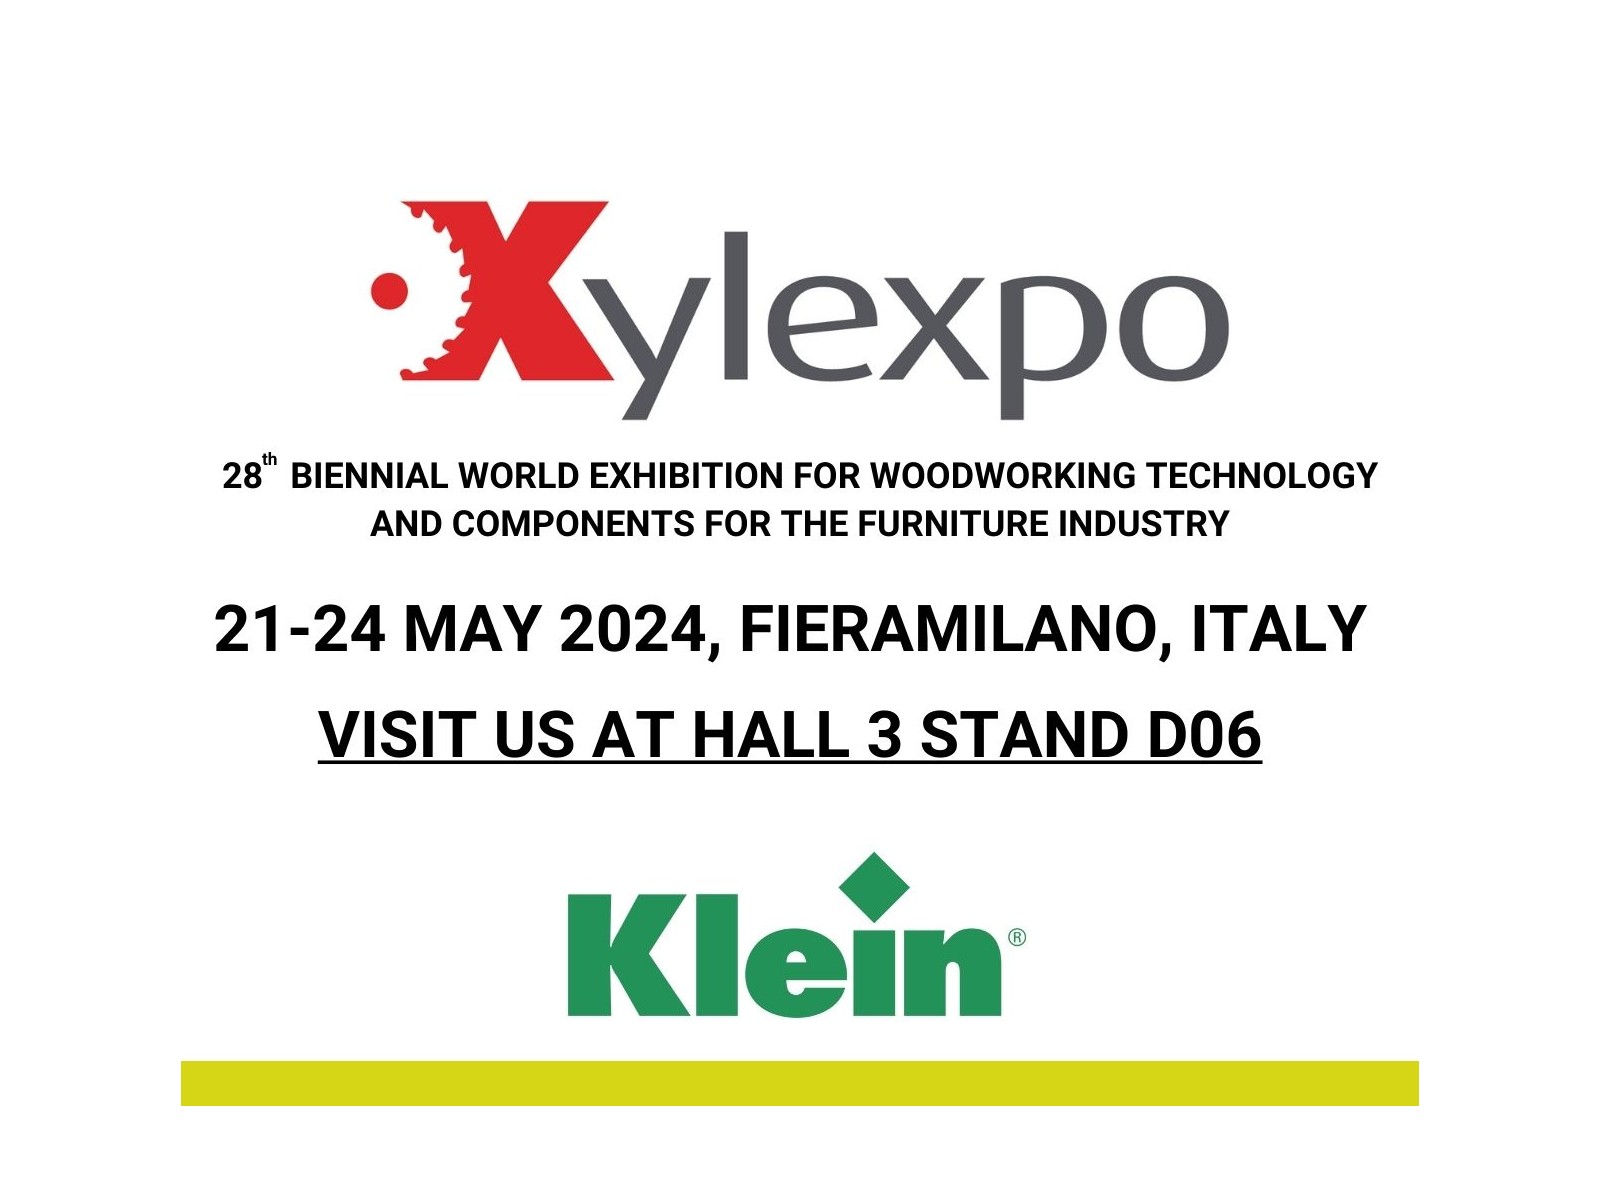 Klein partecipa alla fiera Xylexpo dal 21 al 24 maggio – FieraMilano